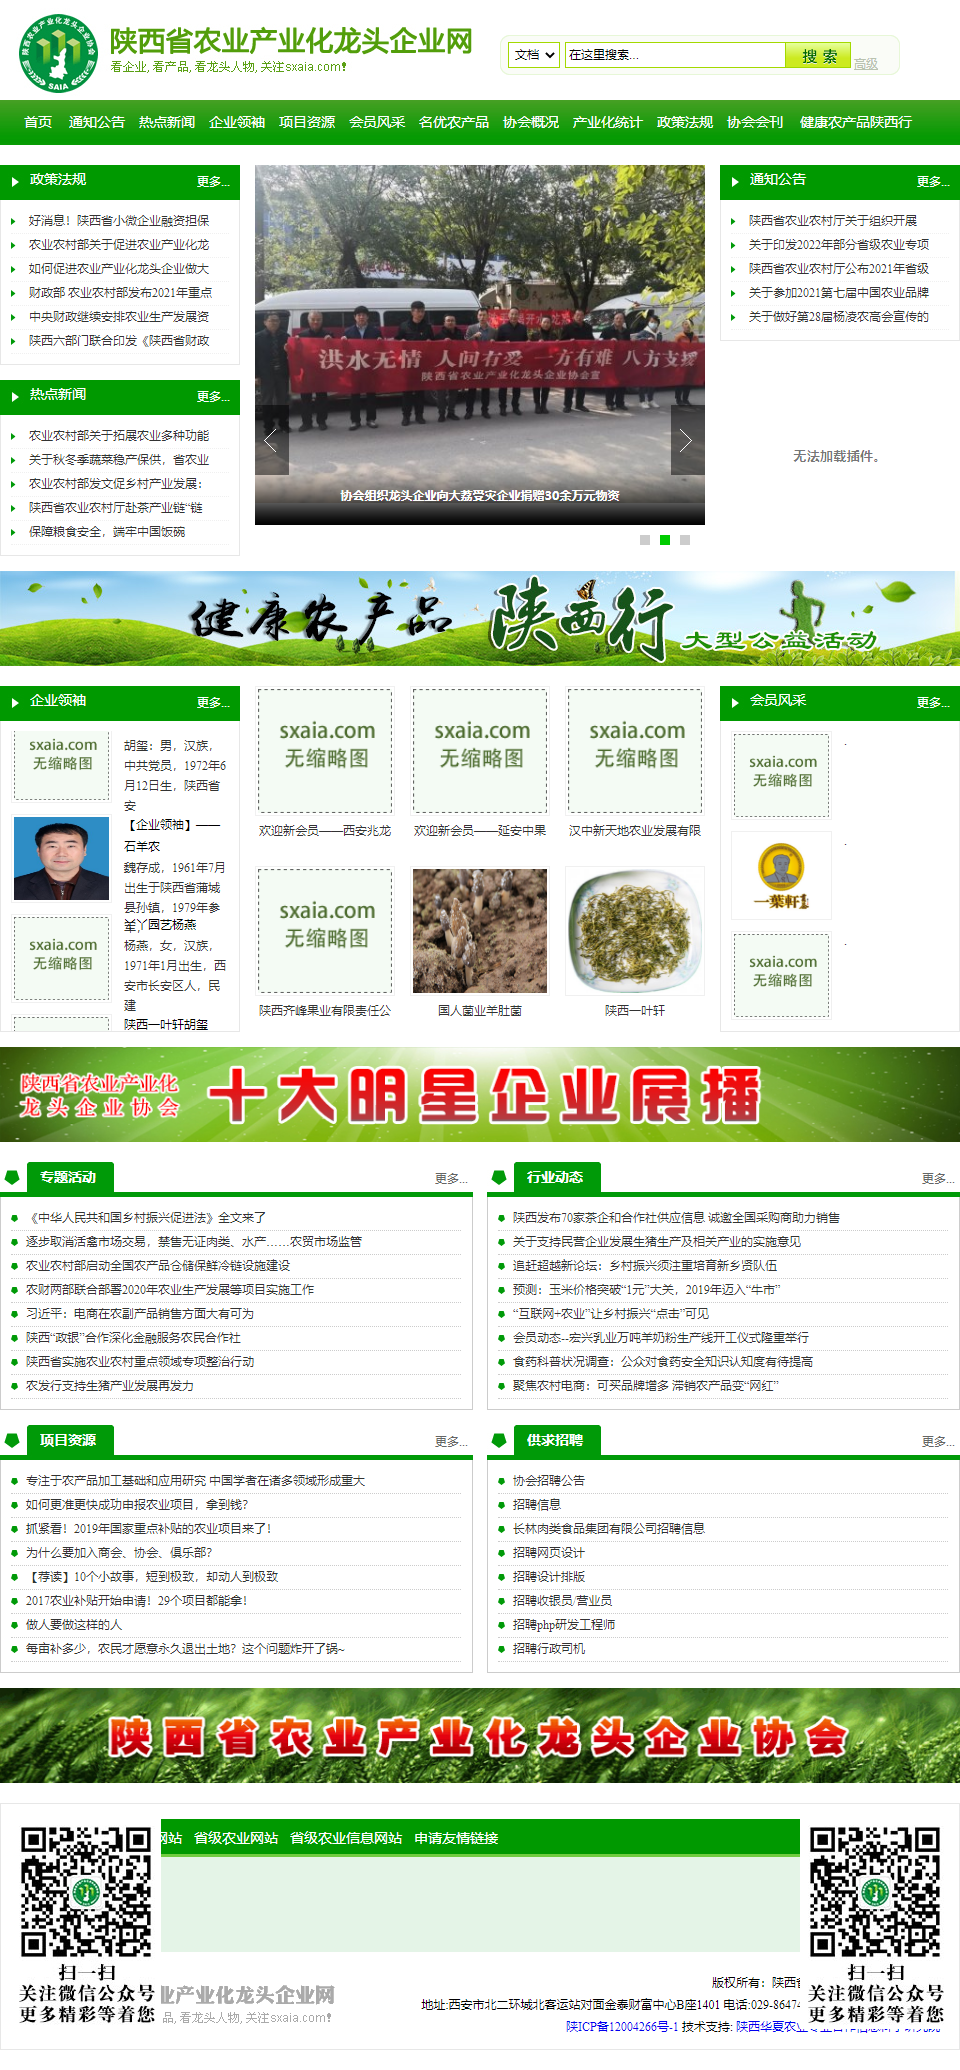 陕西省农业产业化龙头企业协会网站案例